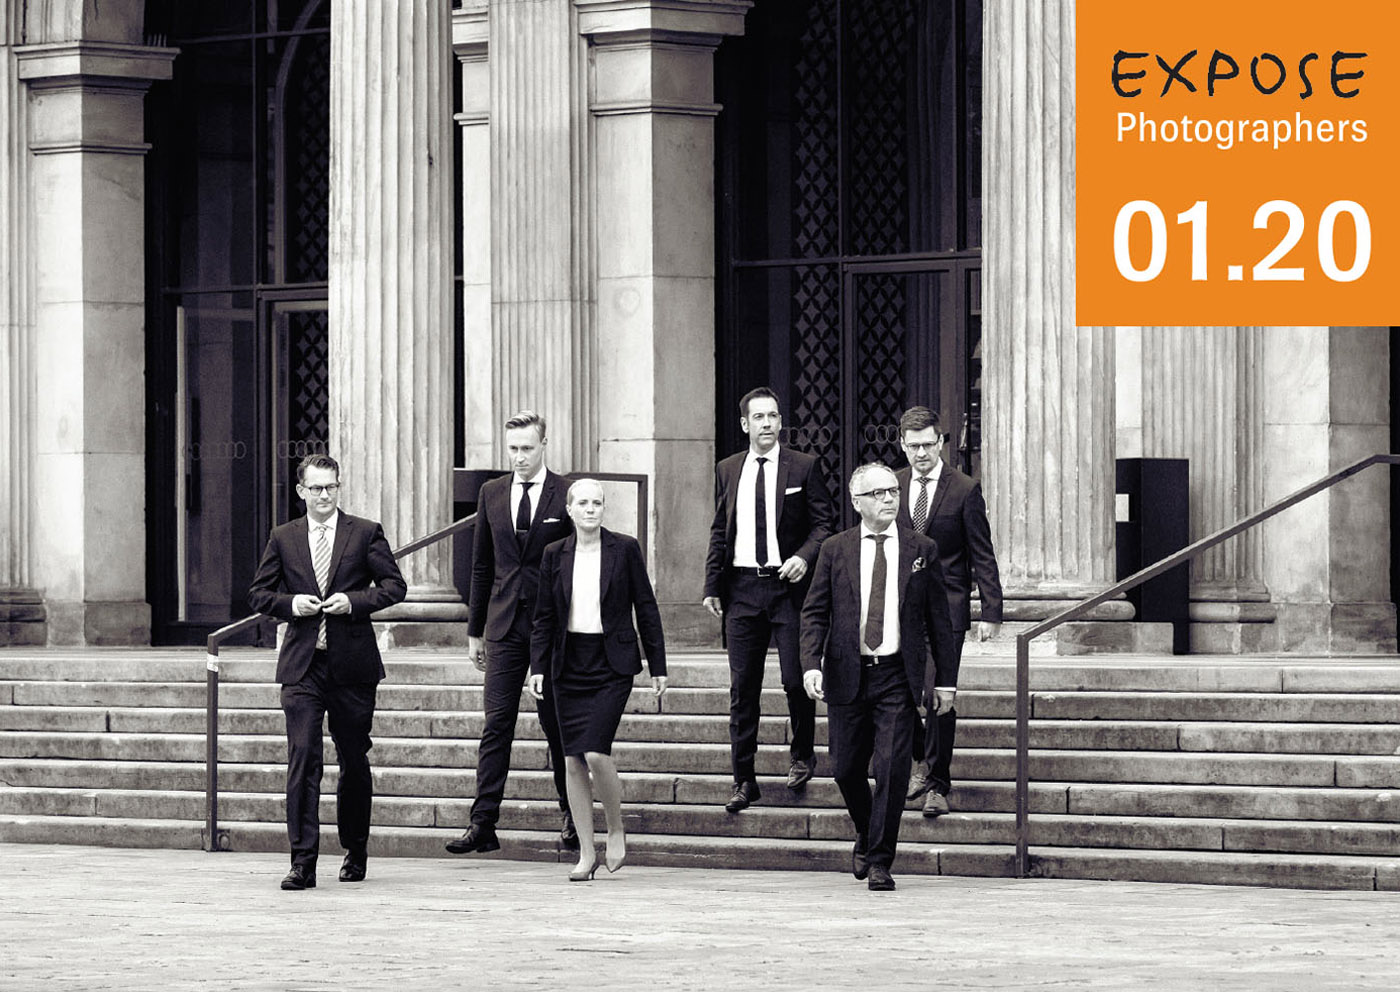 EXPOSE Broschüre 01.20: Individuelle Bildwelten für starke Unternehmensauftritte.